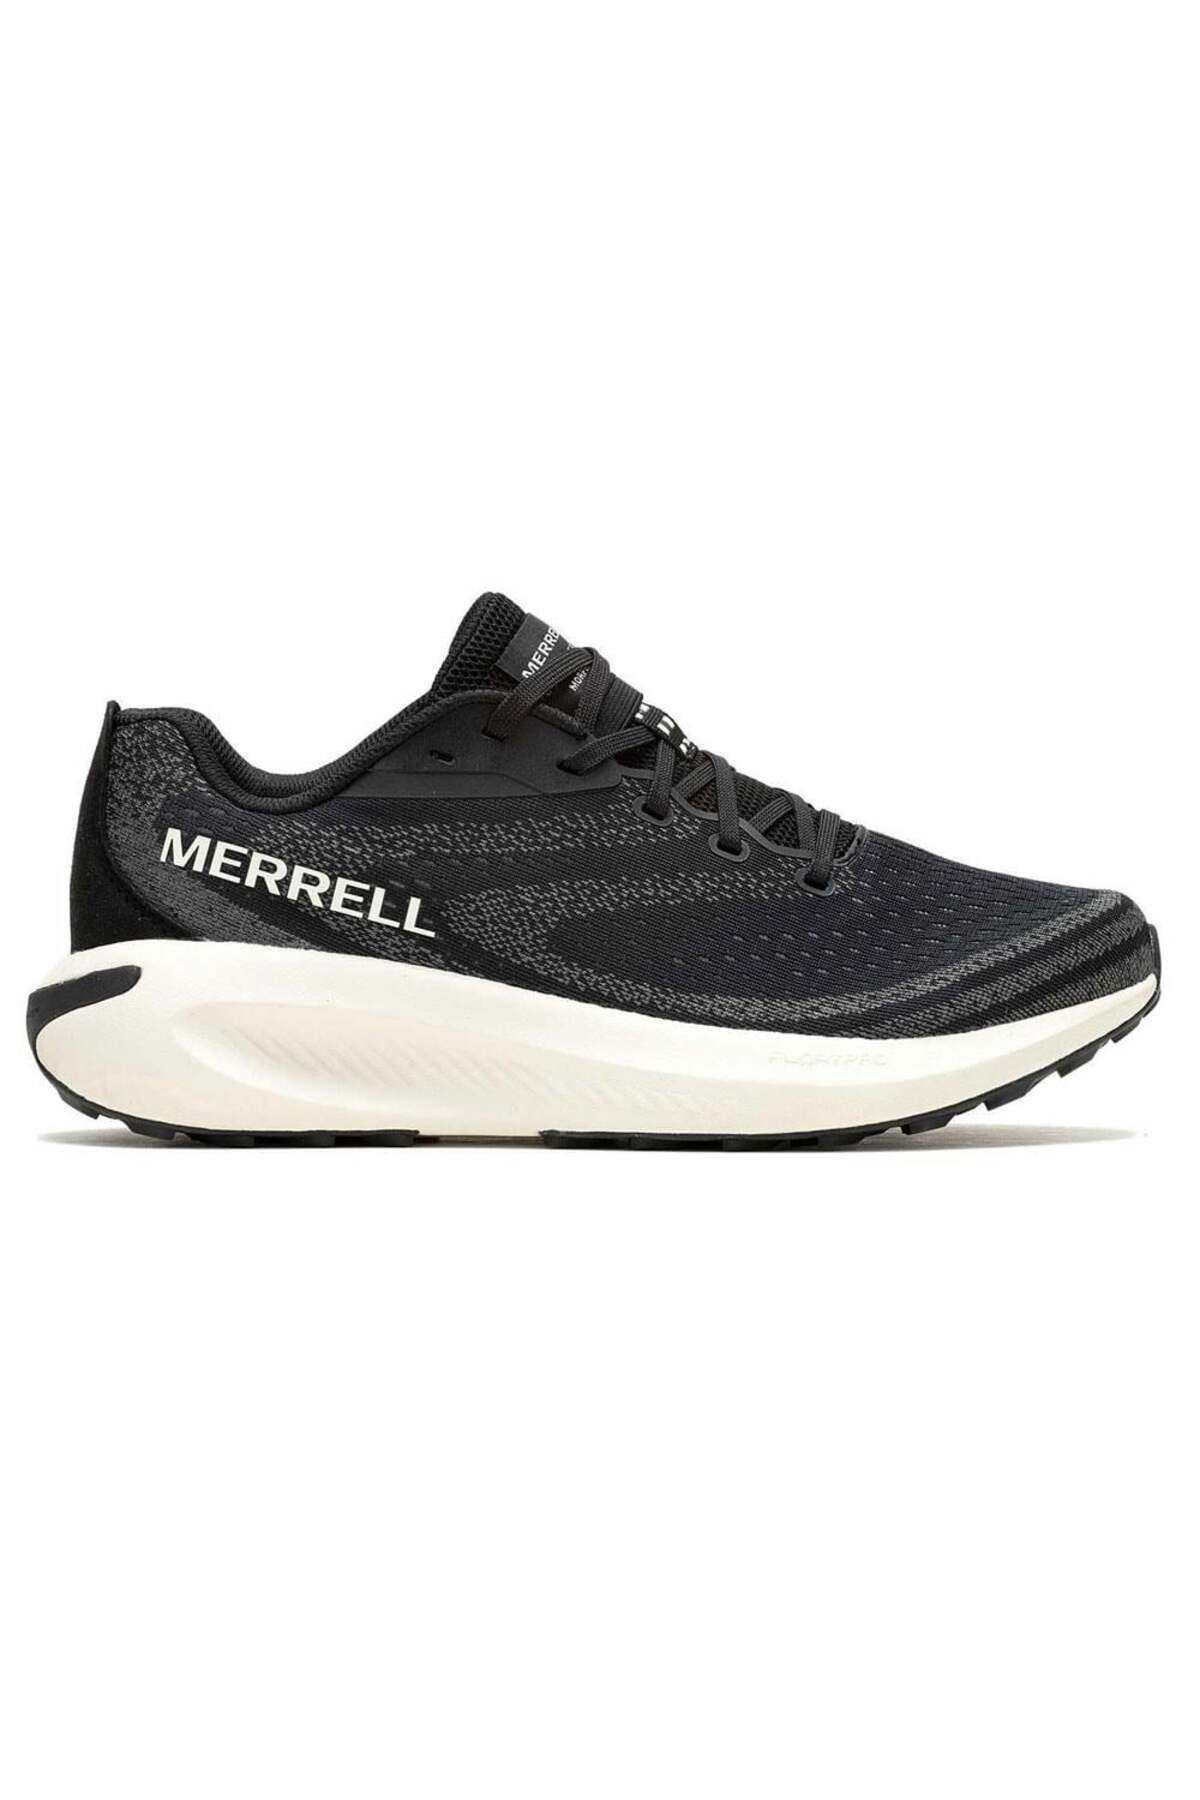 Merrell Morphlite Kadın Spor Ayakkabısı J068132